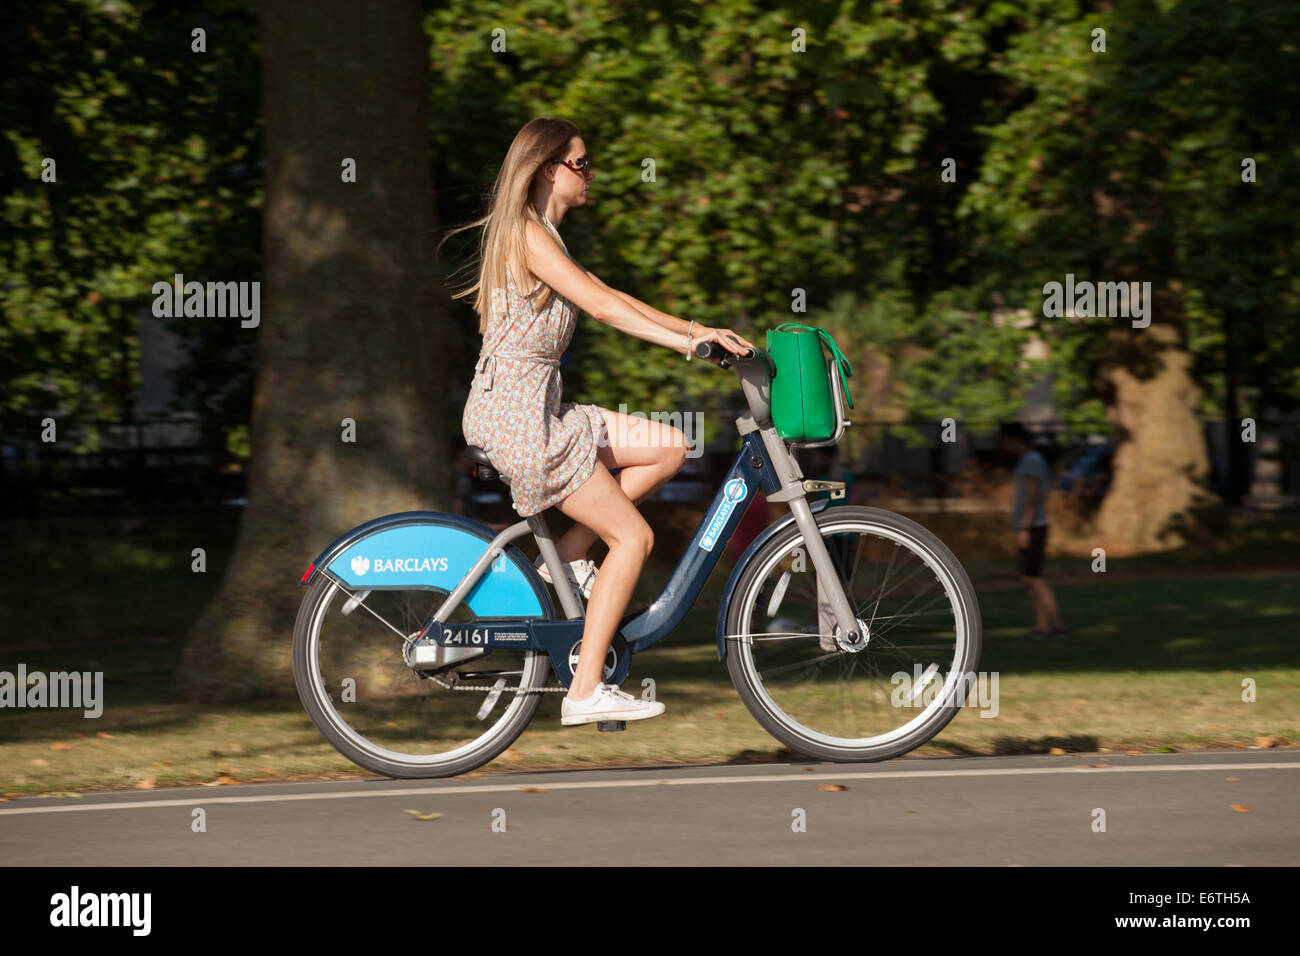 Una ciclista donna su un noleggio pubblico 'Boris bike' in un parco di Londra - il servizio pubblico di noleggio biciclette di Londra, Hyde Park, Londra, Regno Unito Foto Stock